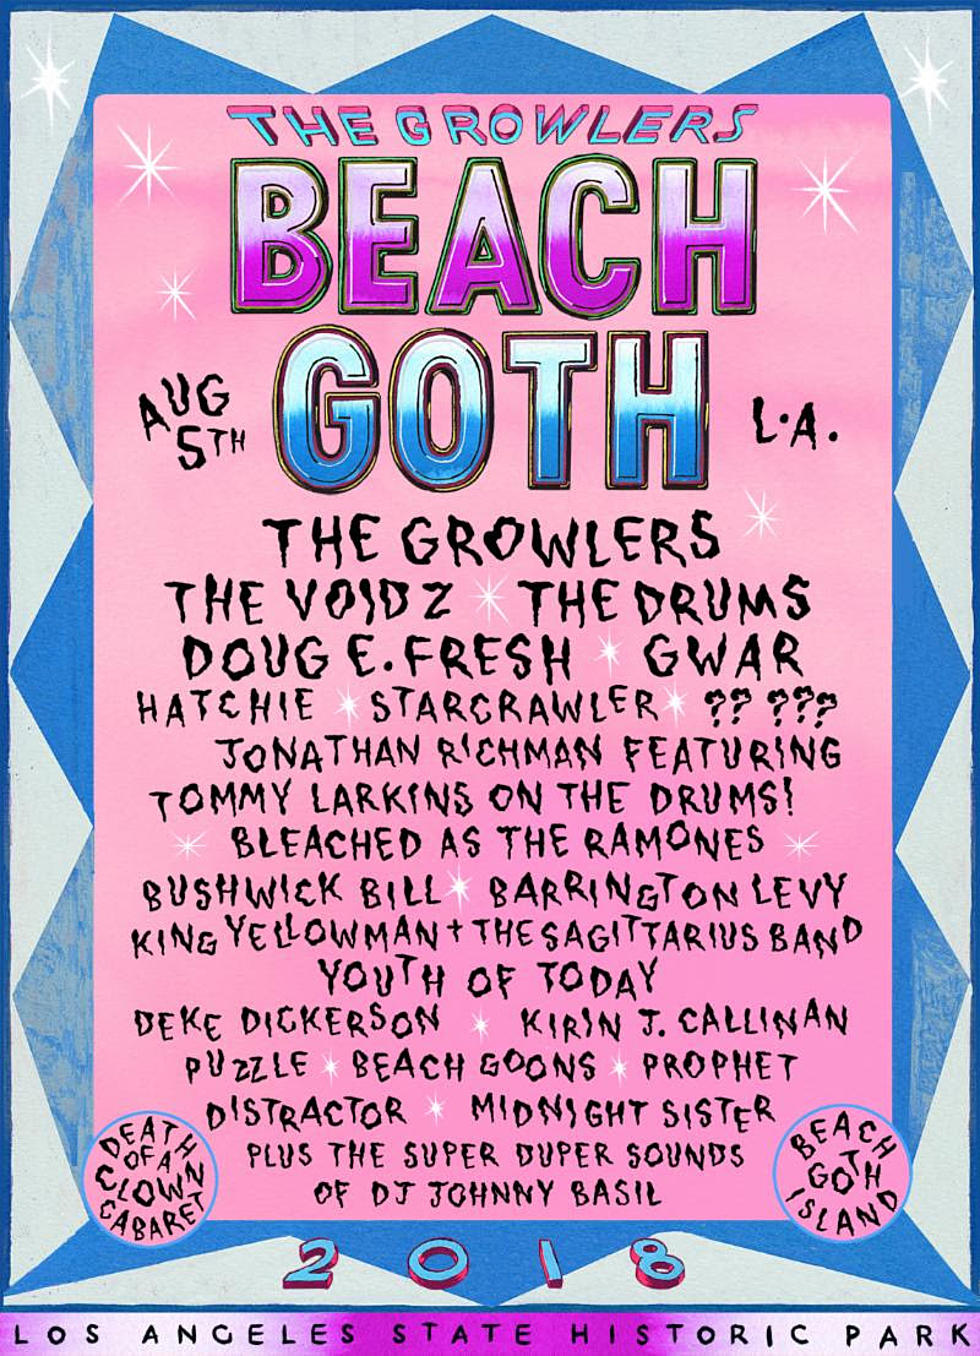 The Growlers announce 2018 Beach Goth lineup (The Voidz, GWAR, more)